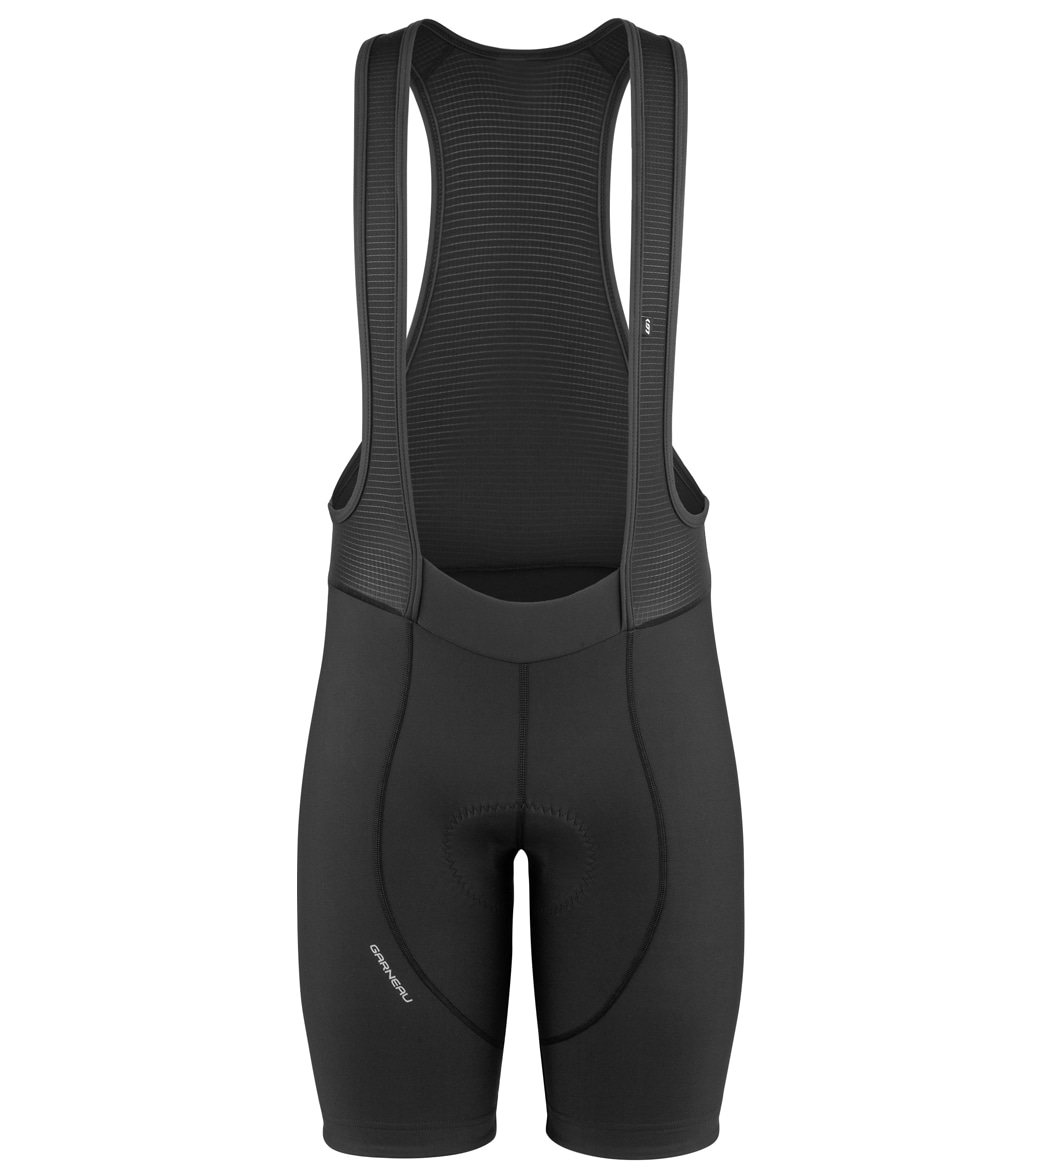 Louis Garneau Men's Fit Sensor 3 Cycling Bib Short - Black Medium - Swimoutlet.com